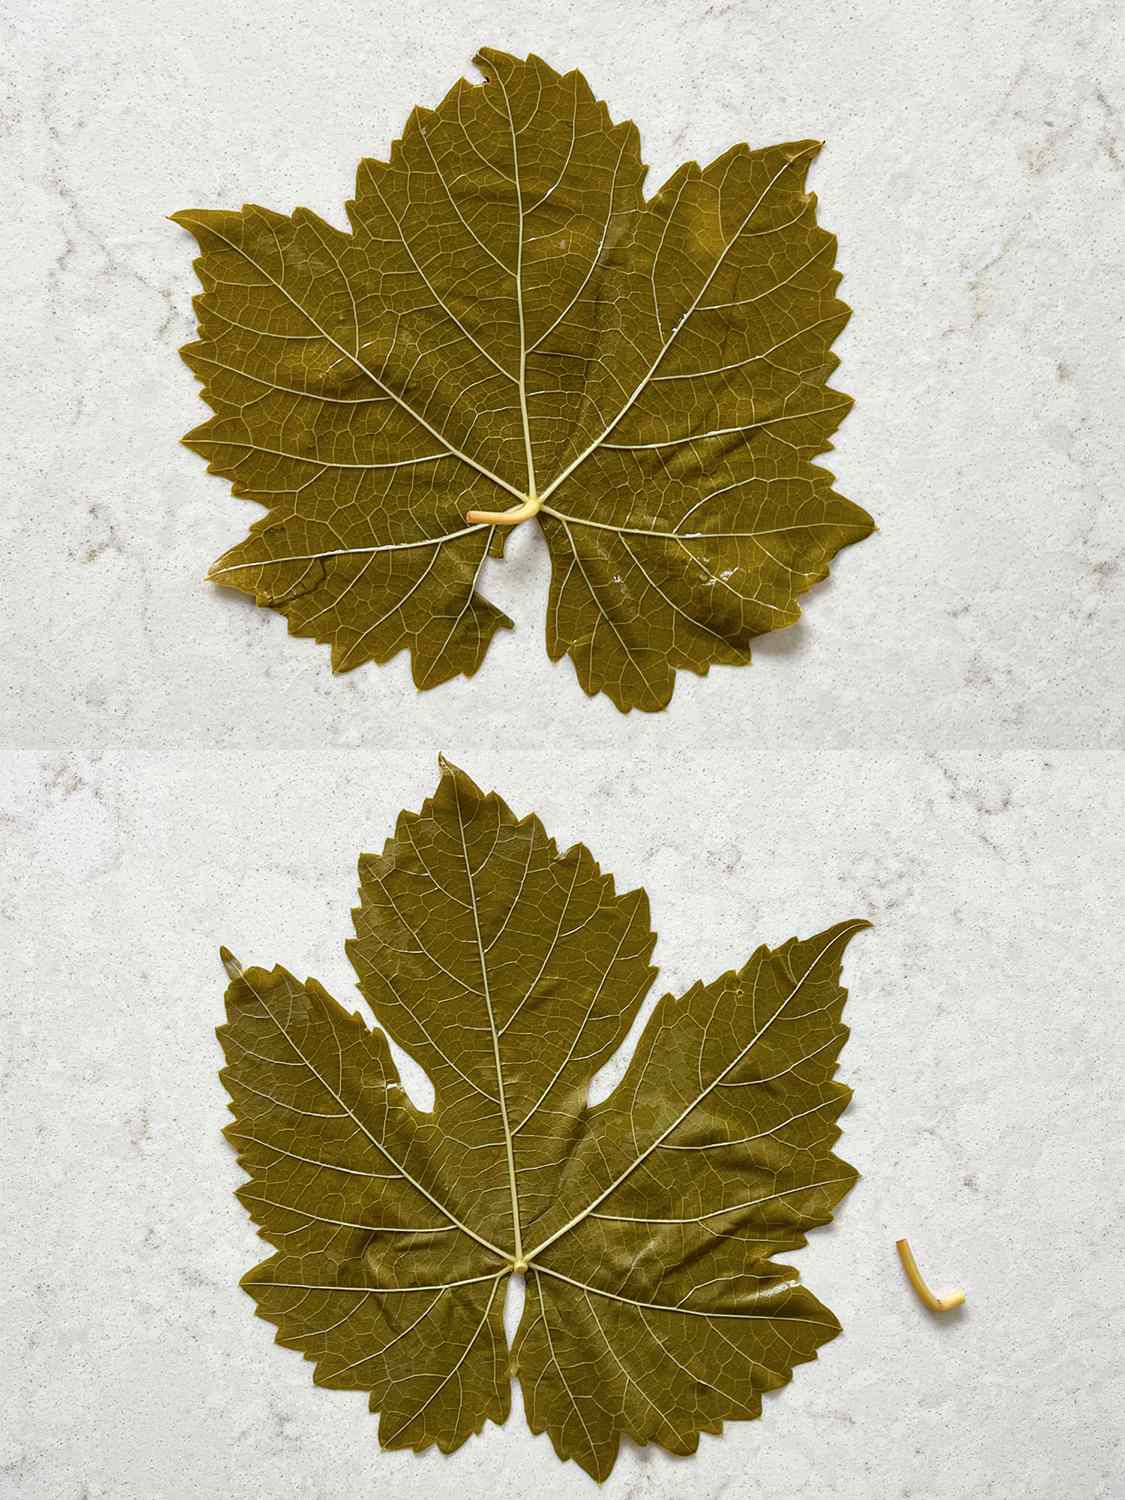 两个图像拼贴。上图:葡萄叶的脸表干粘起来。底部:茎从左,摆放正确